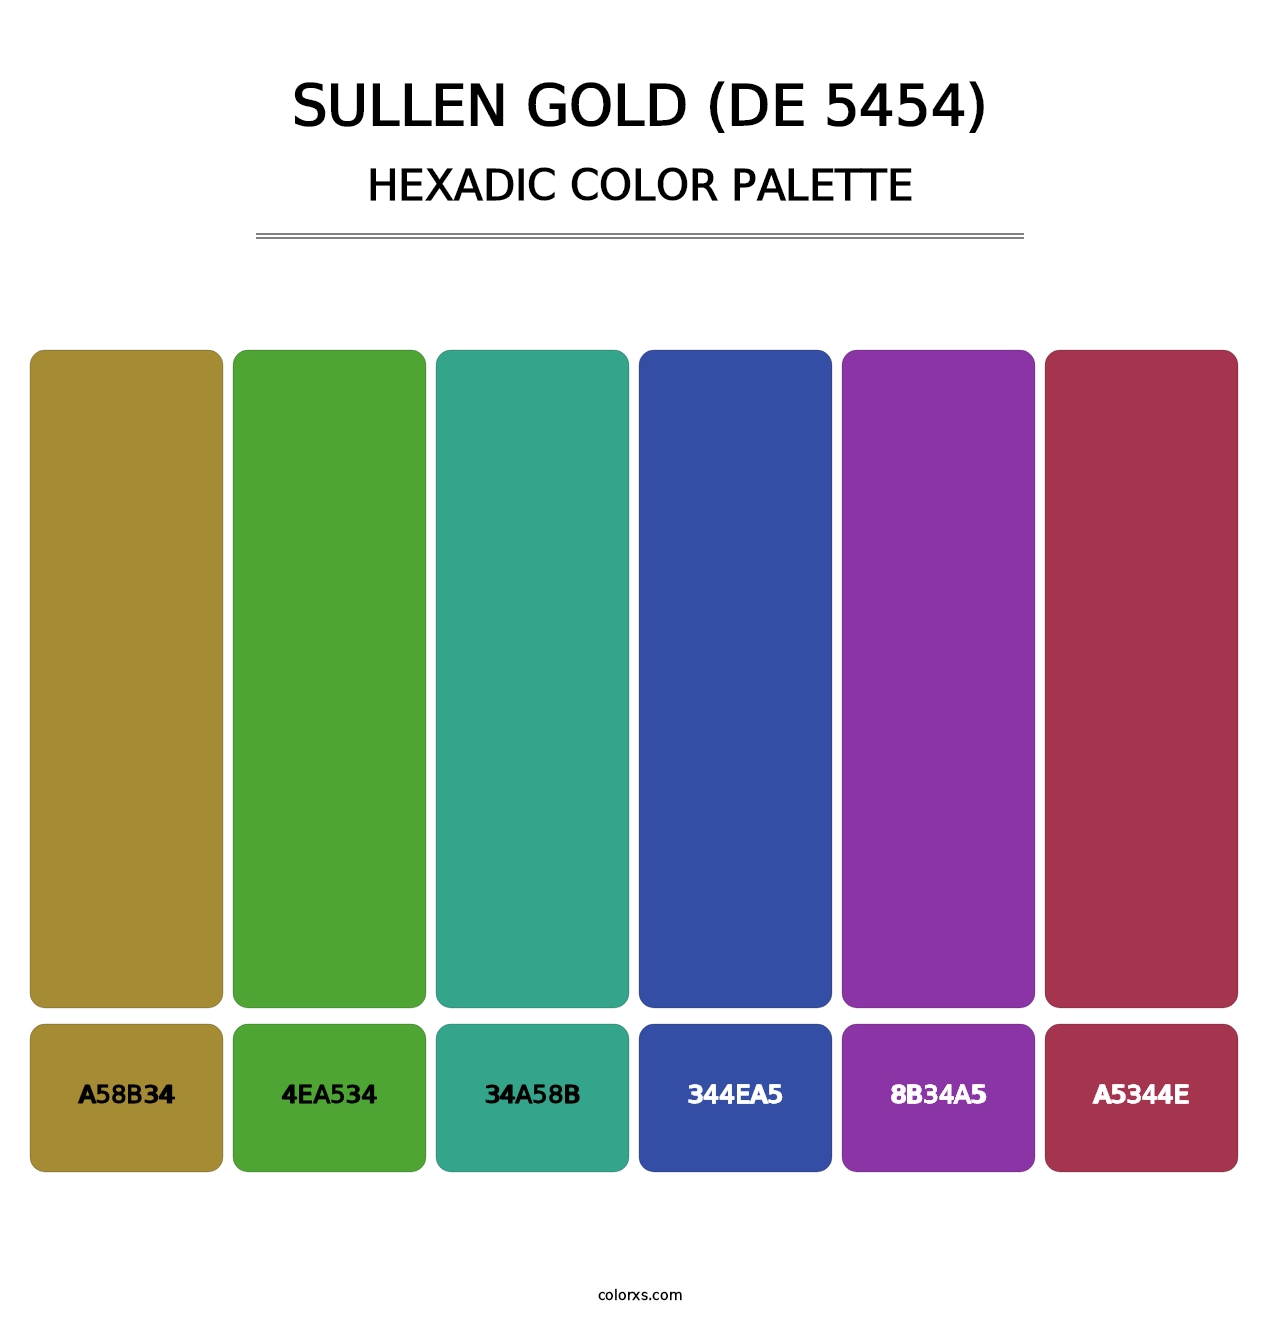 Sullen Gold (DE 5454) - Hexadic Color Palette